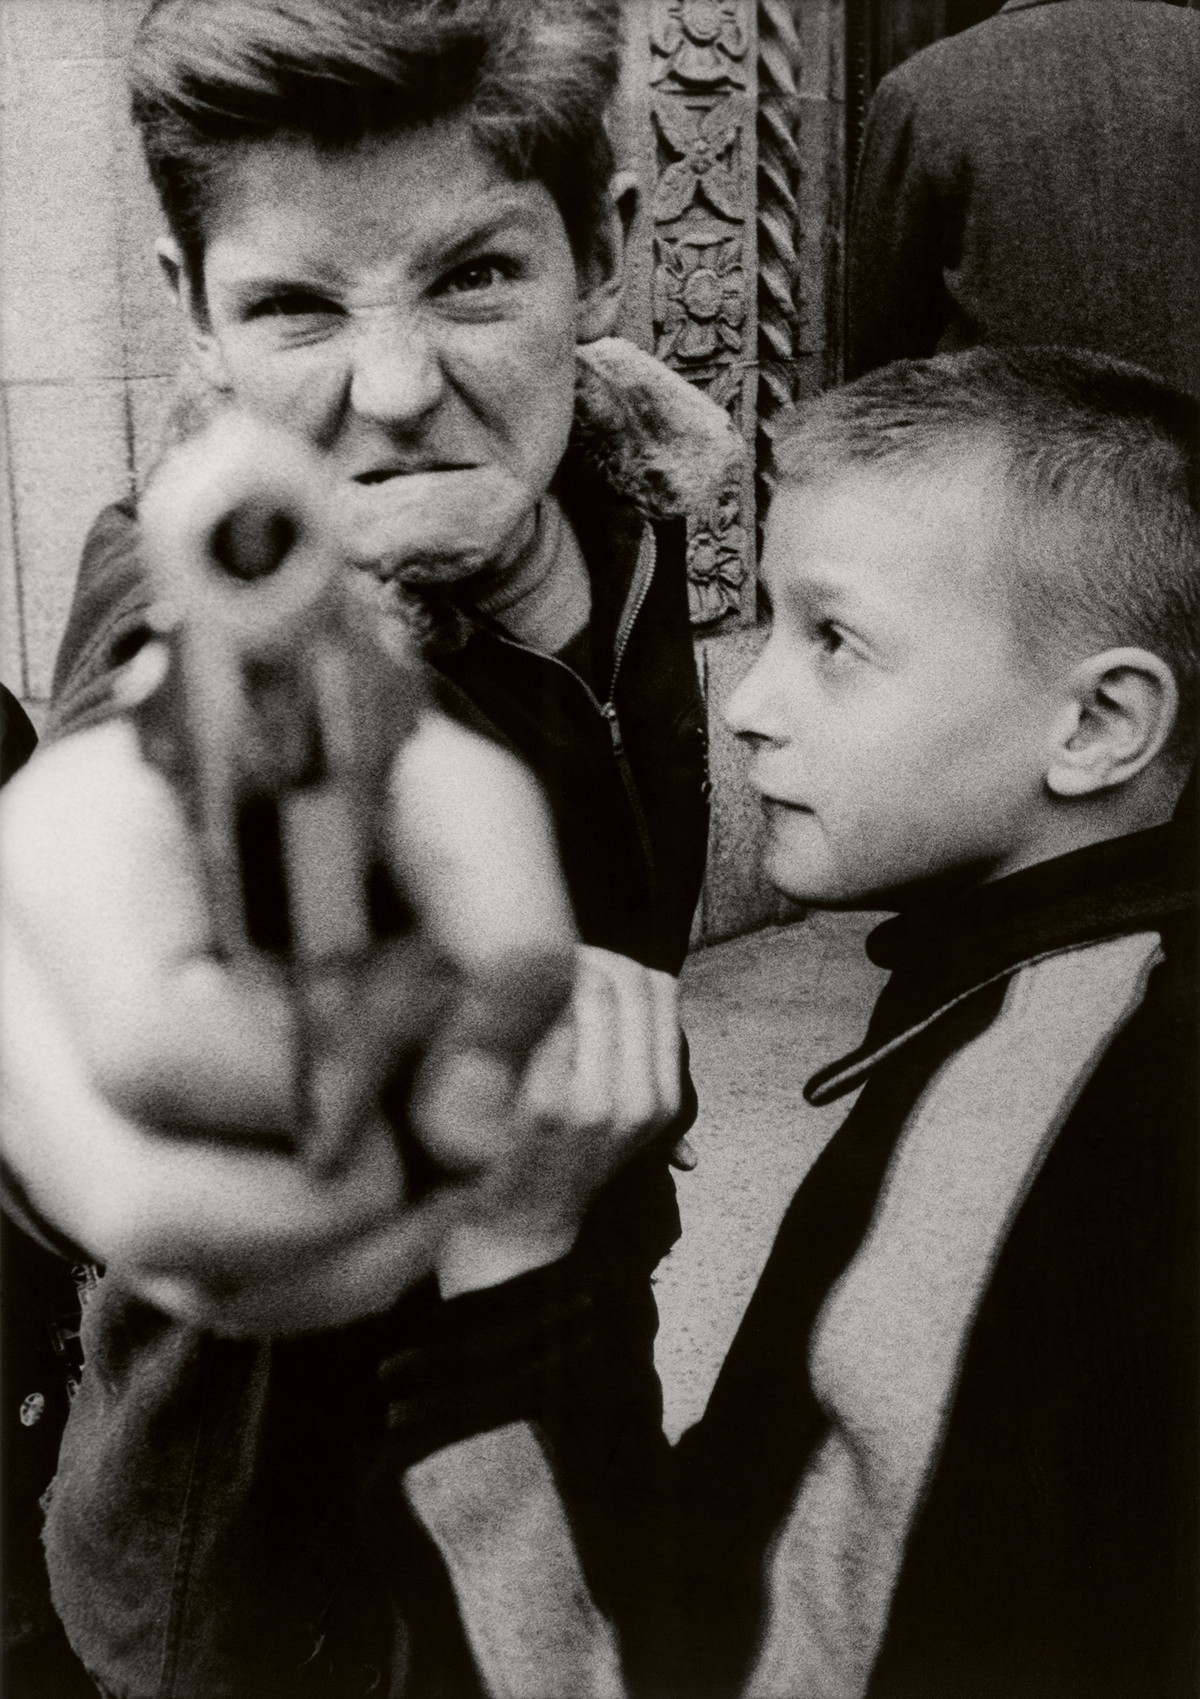 Gun 1, New York, 1955
© William Klein